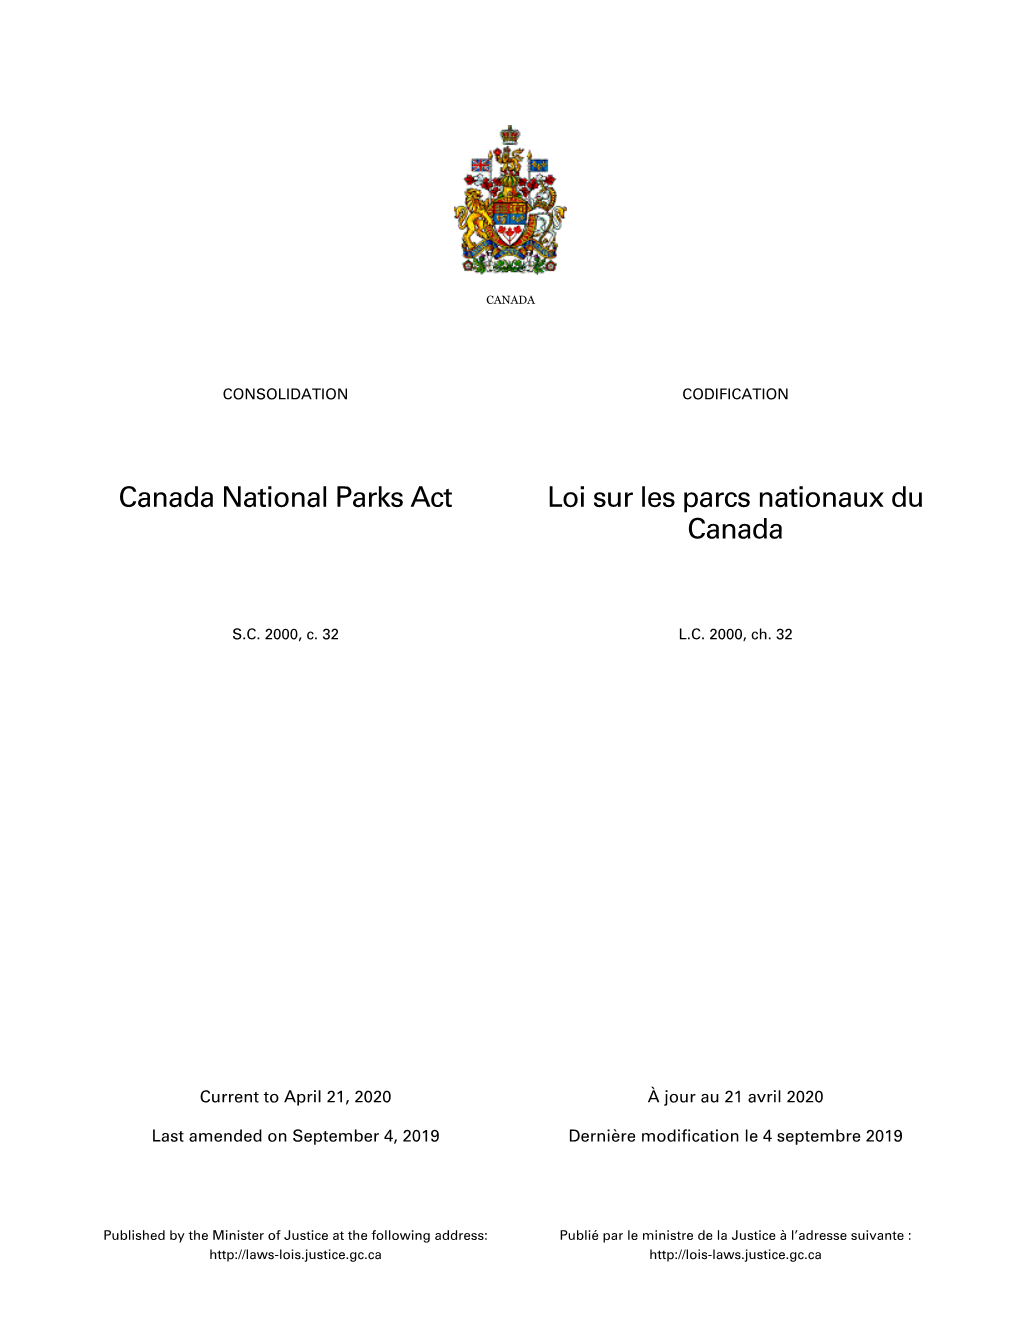 Canada National Parks Act Loi Sur Les Parcs Nationaux Du Canada